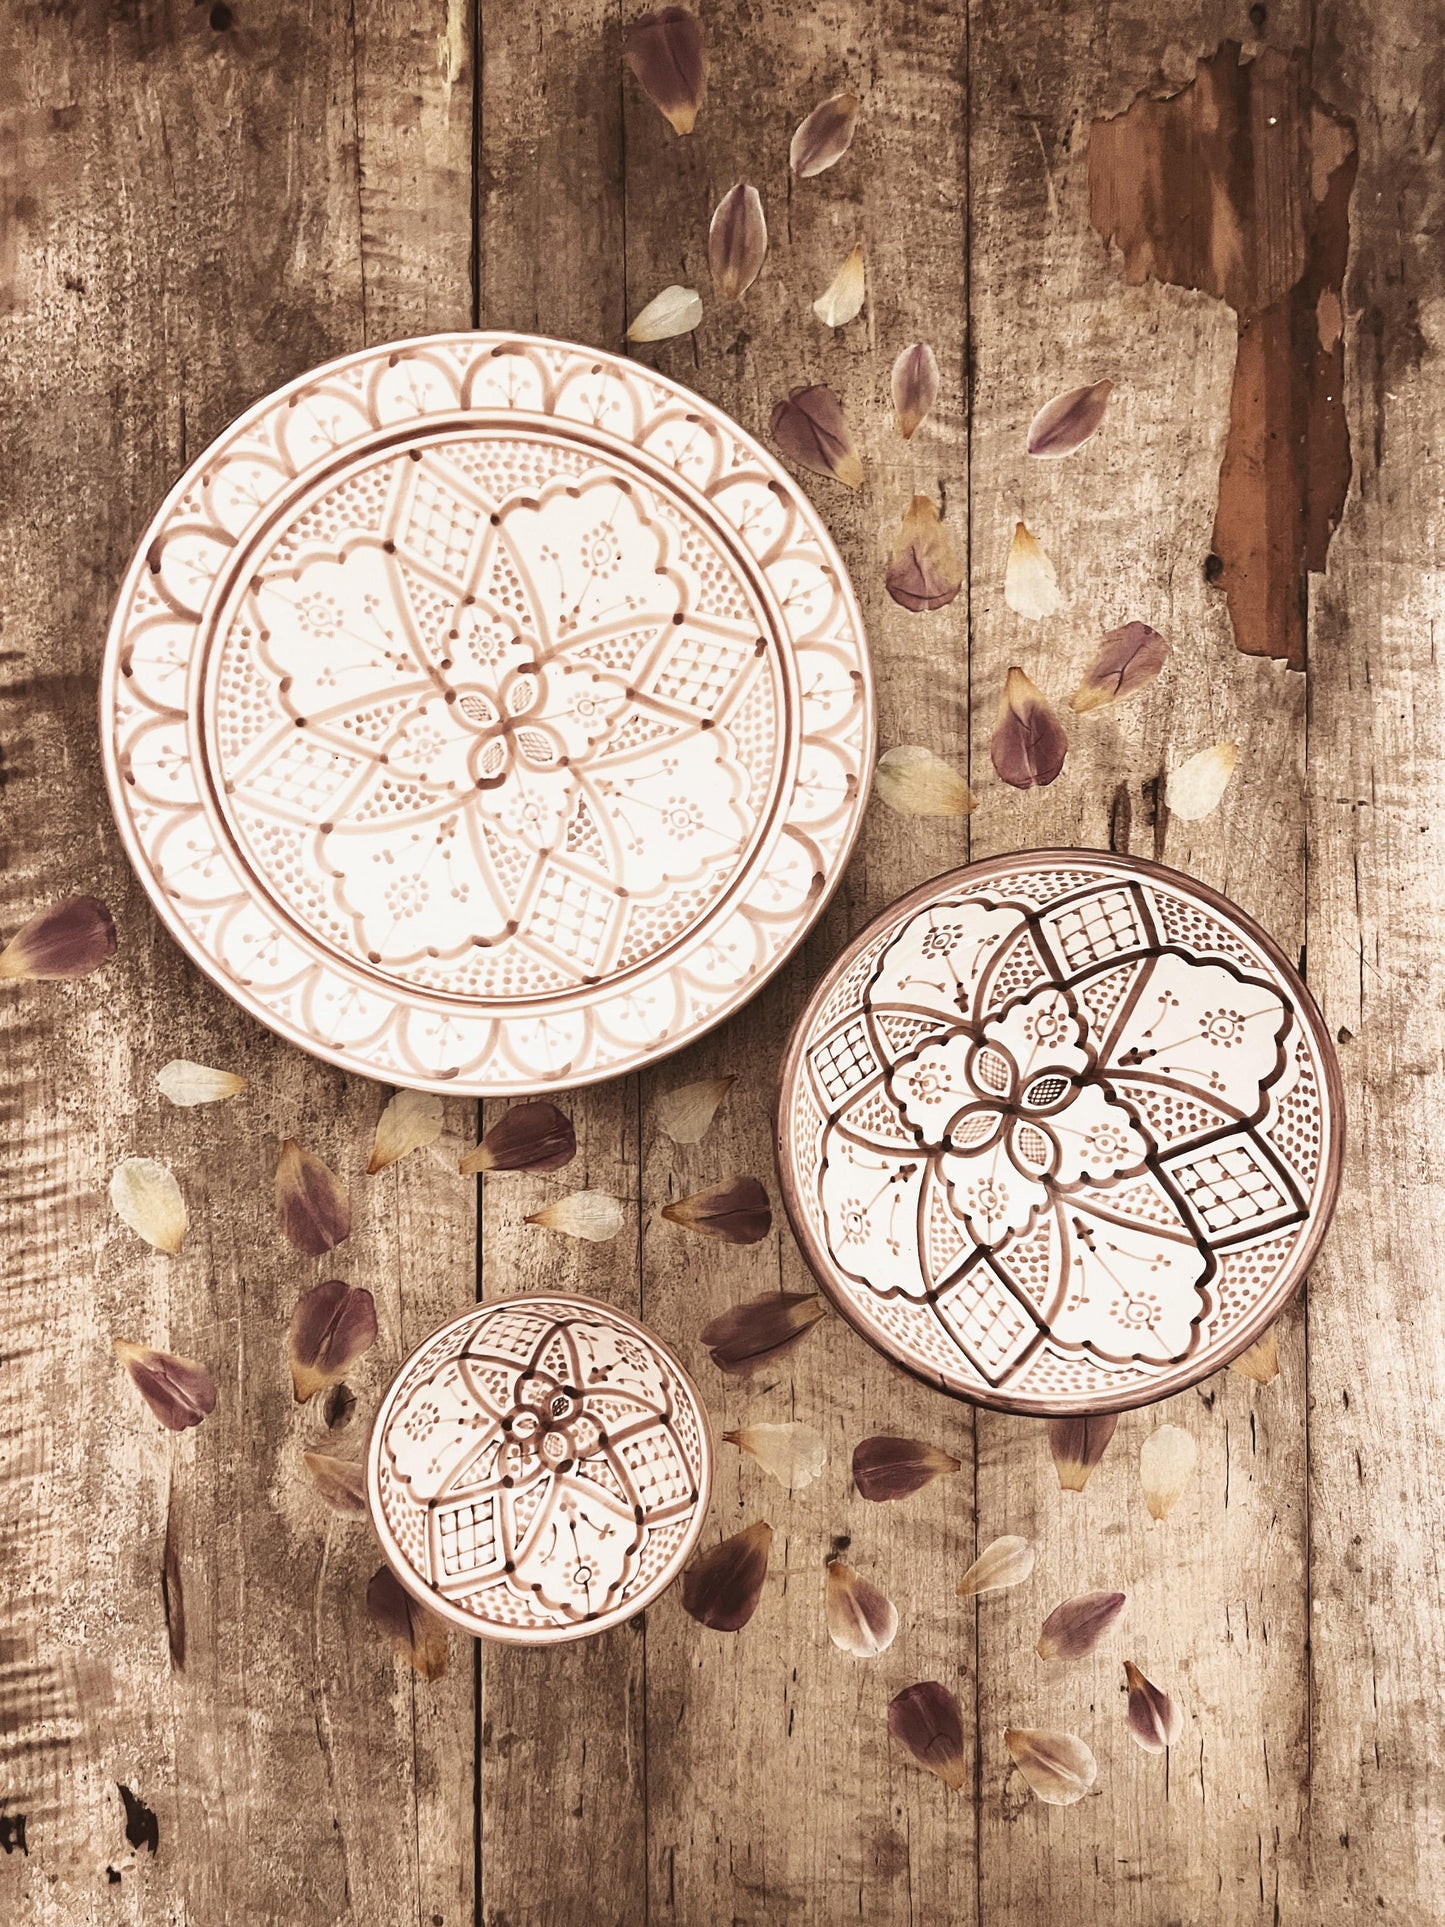 Håndlagde og håndmalte fat og skåler fra Marokko med nydelige detaljer i fargen mocca. Alle fat og skåler er unike, nydelige å dekke bordet med både hjemme og på hytta.